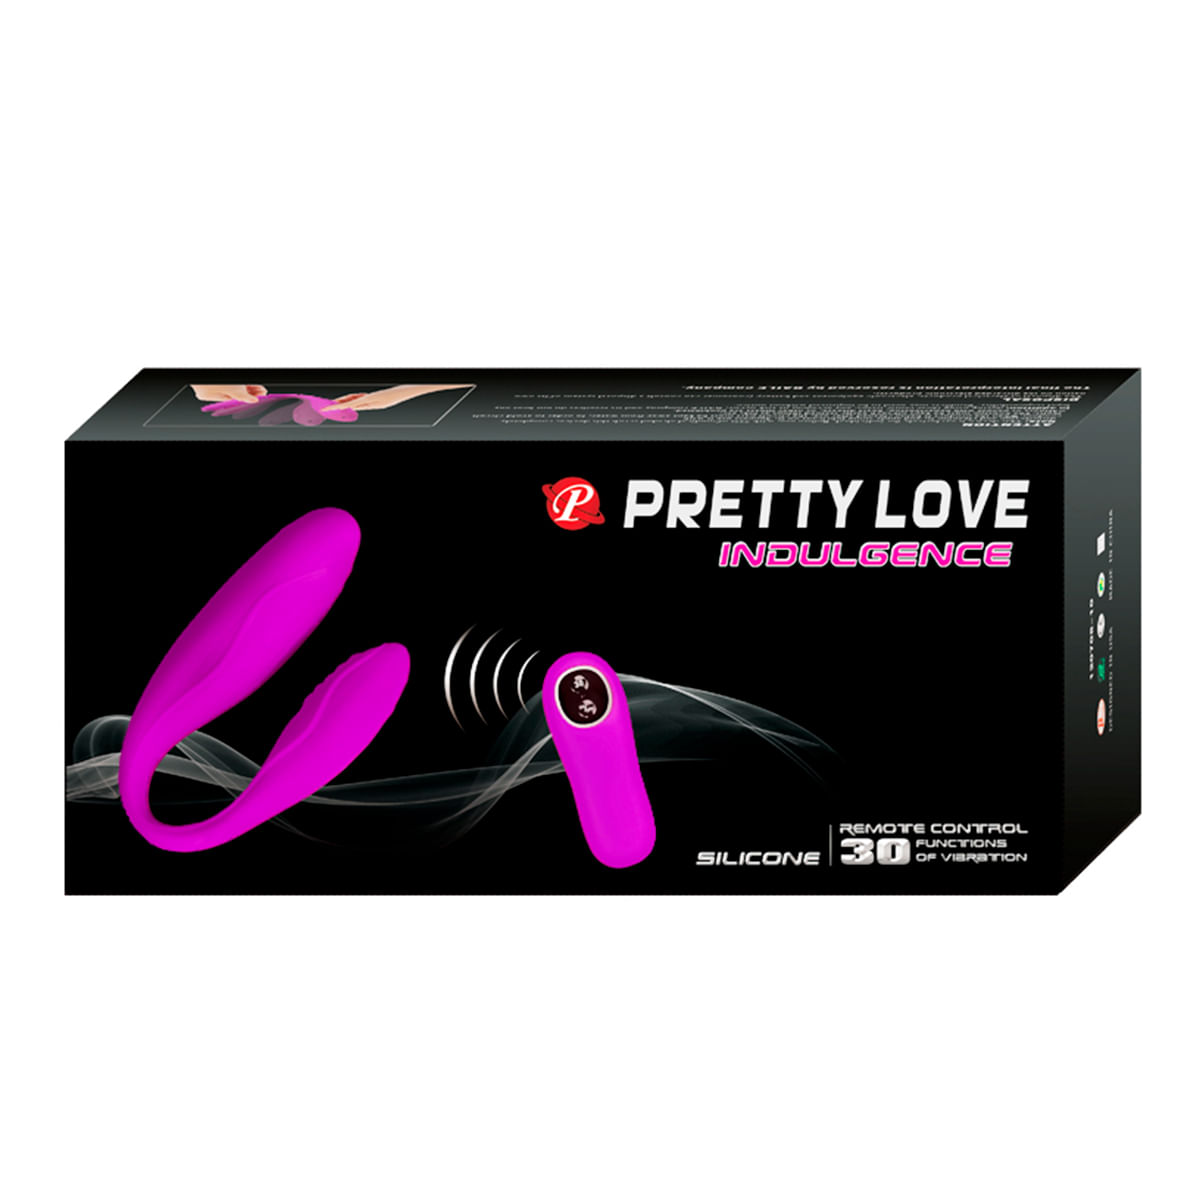 Pretty Love Indulgence Vibrador para Casais com 30 Modos de Vibração Recarregável Sexy Import